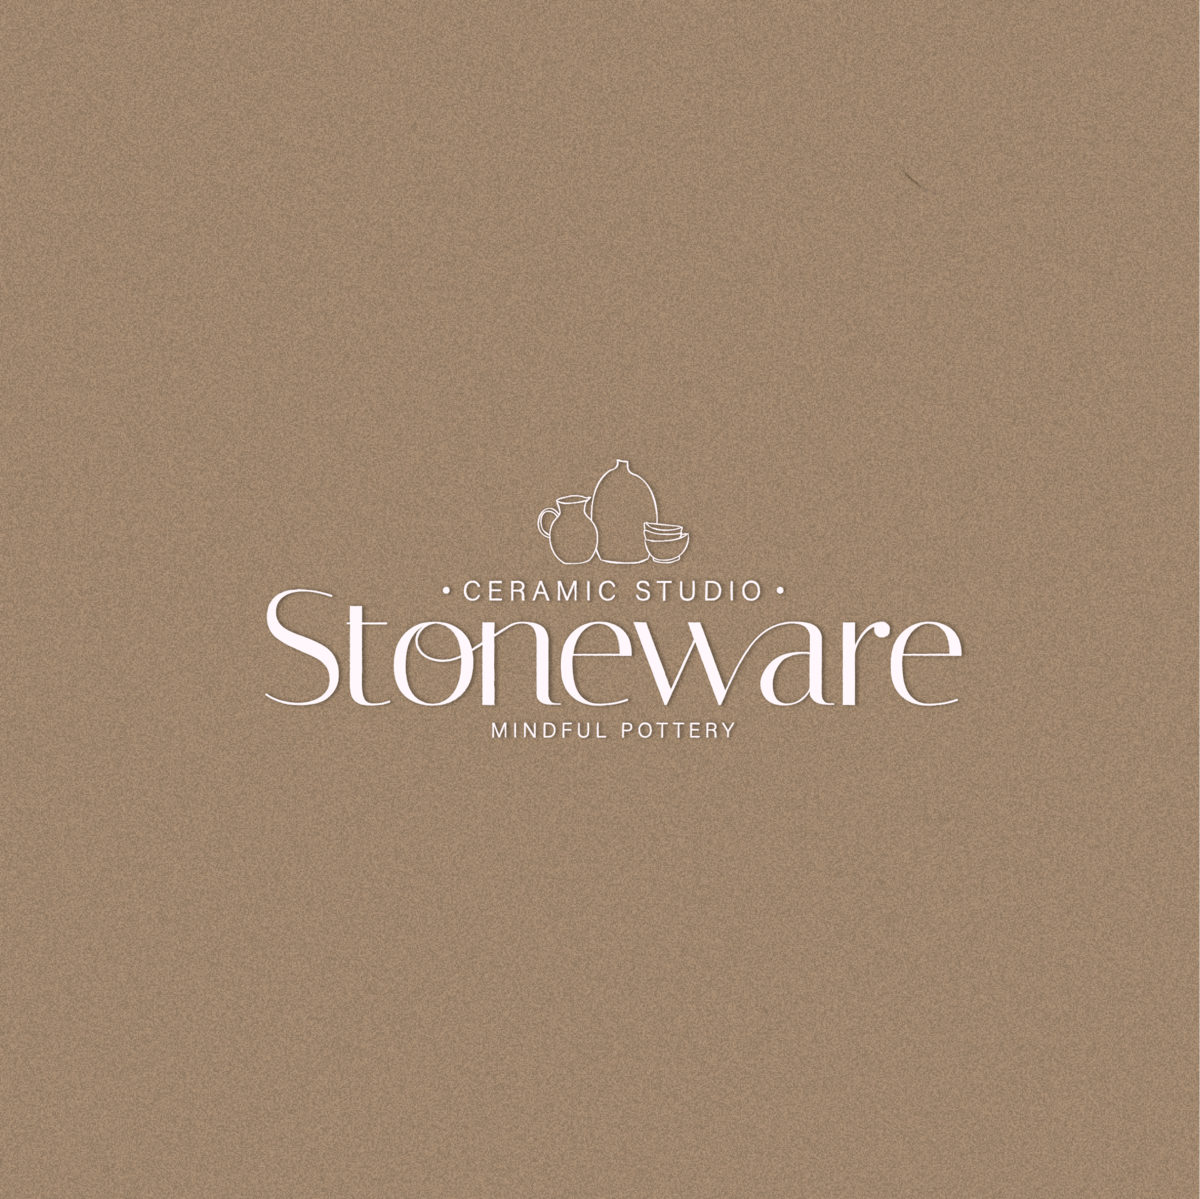 Stonewarelogo1